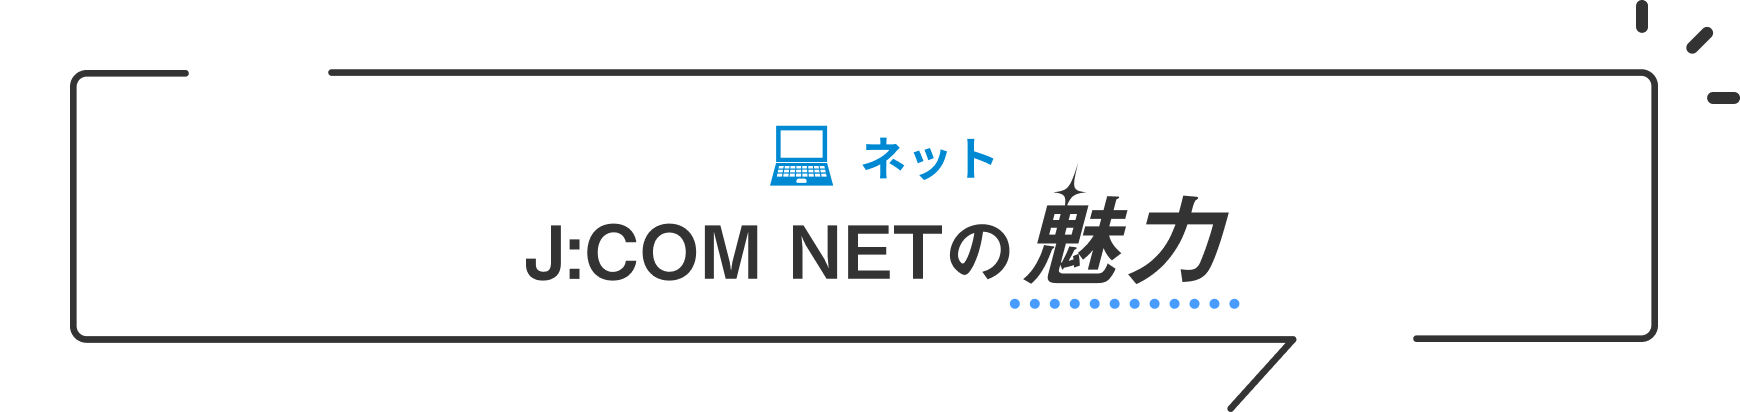 NET J:COM NET